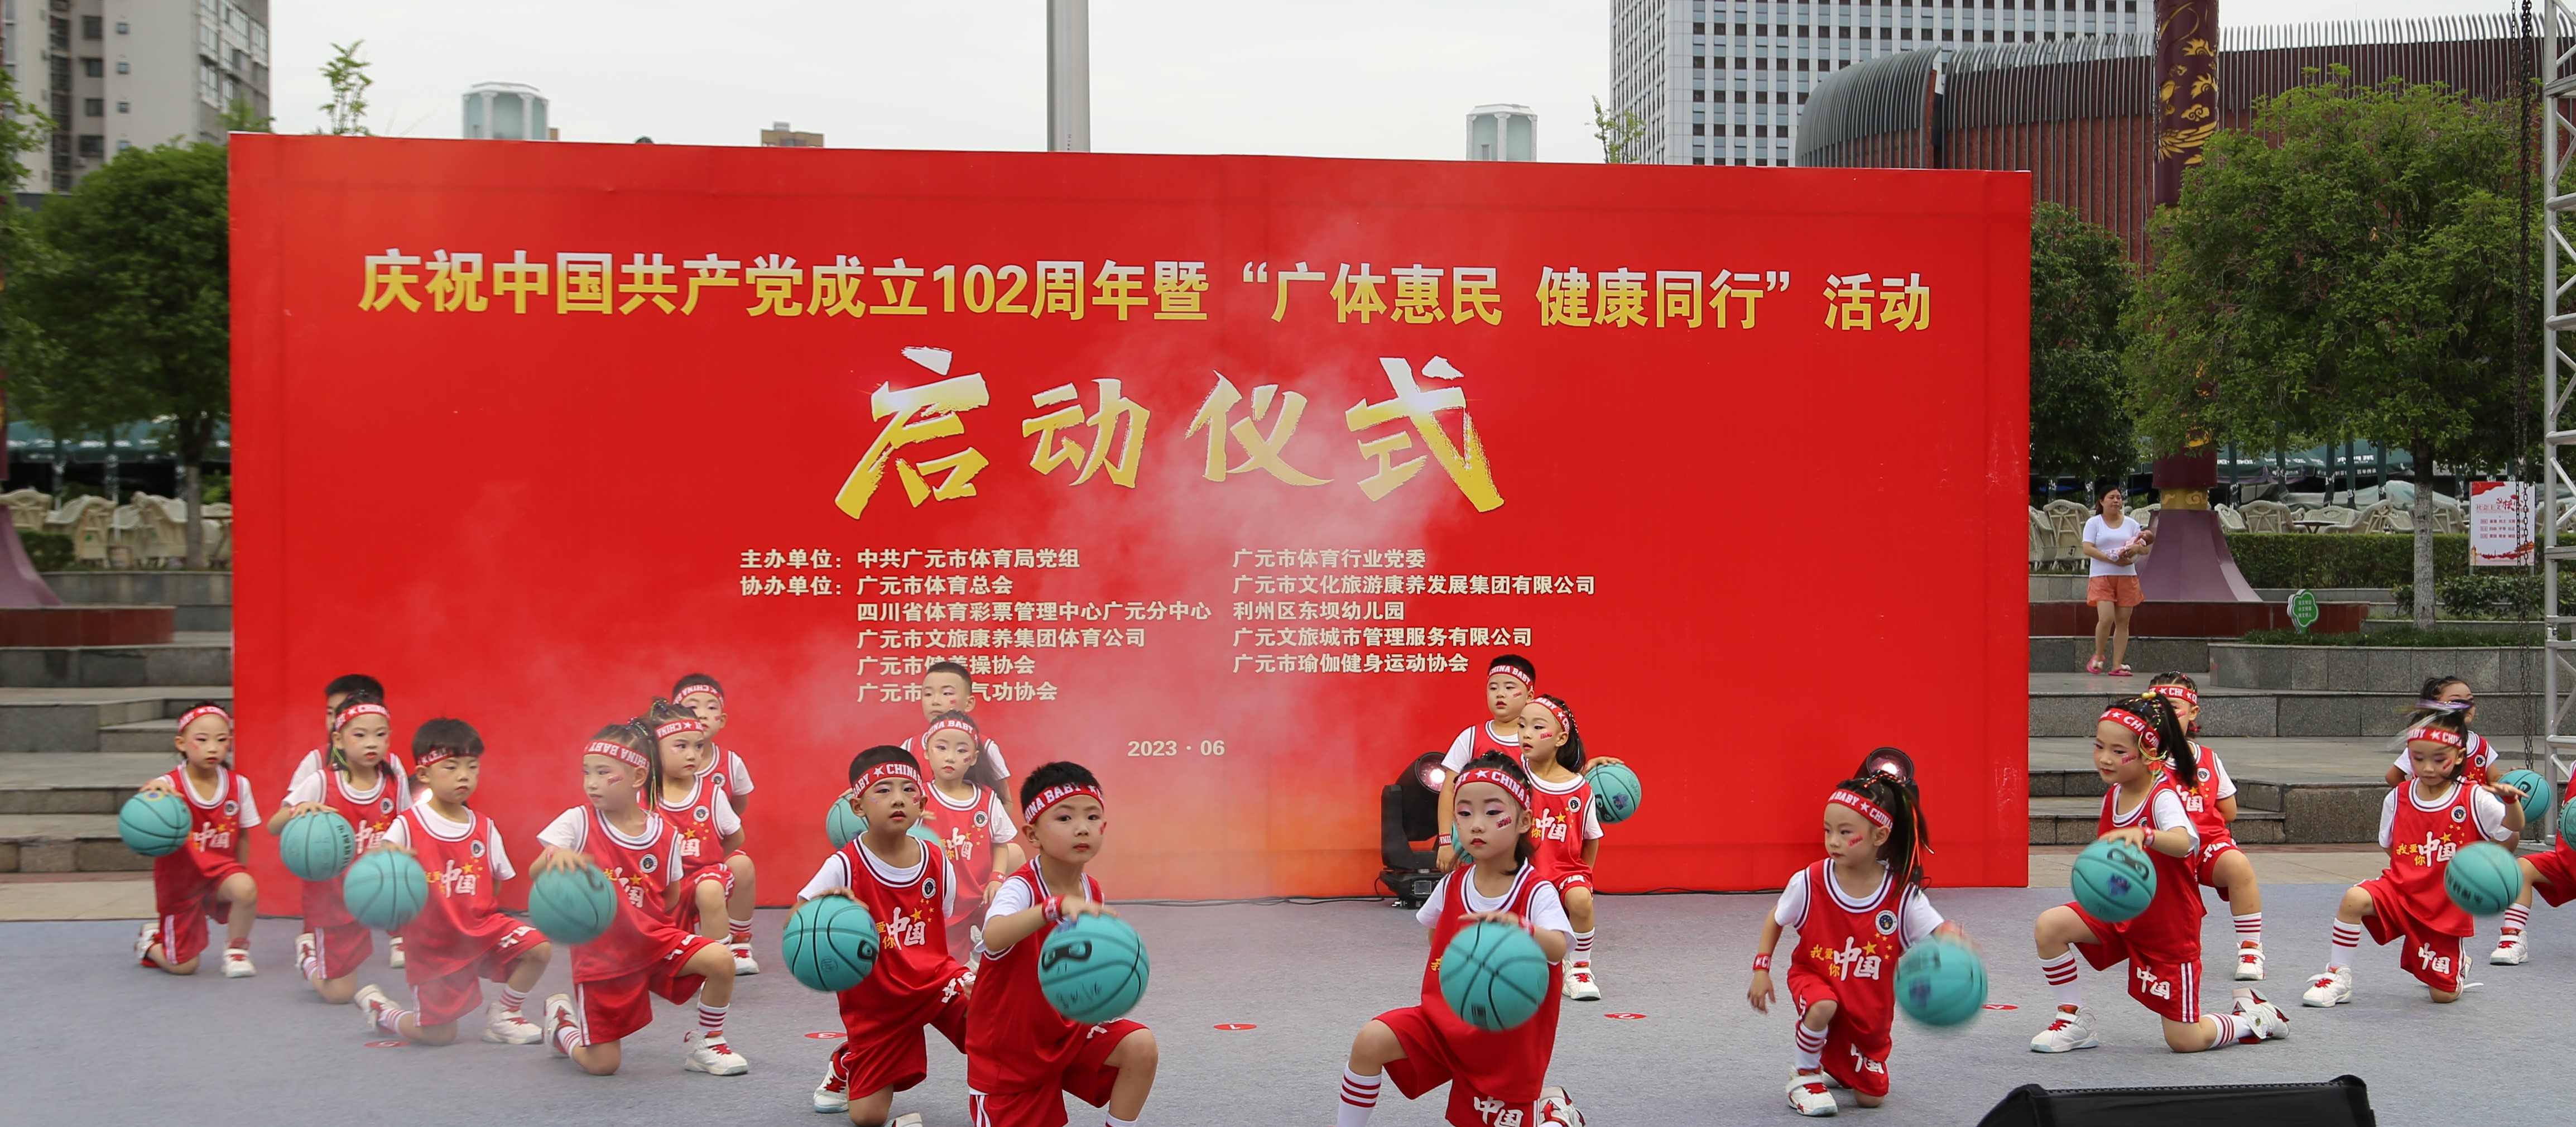 市体育局庆祝中国共产党成立102周年暨“广体惠民 健康同行”活动正式启动